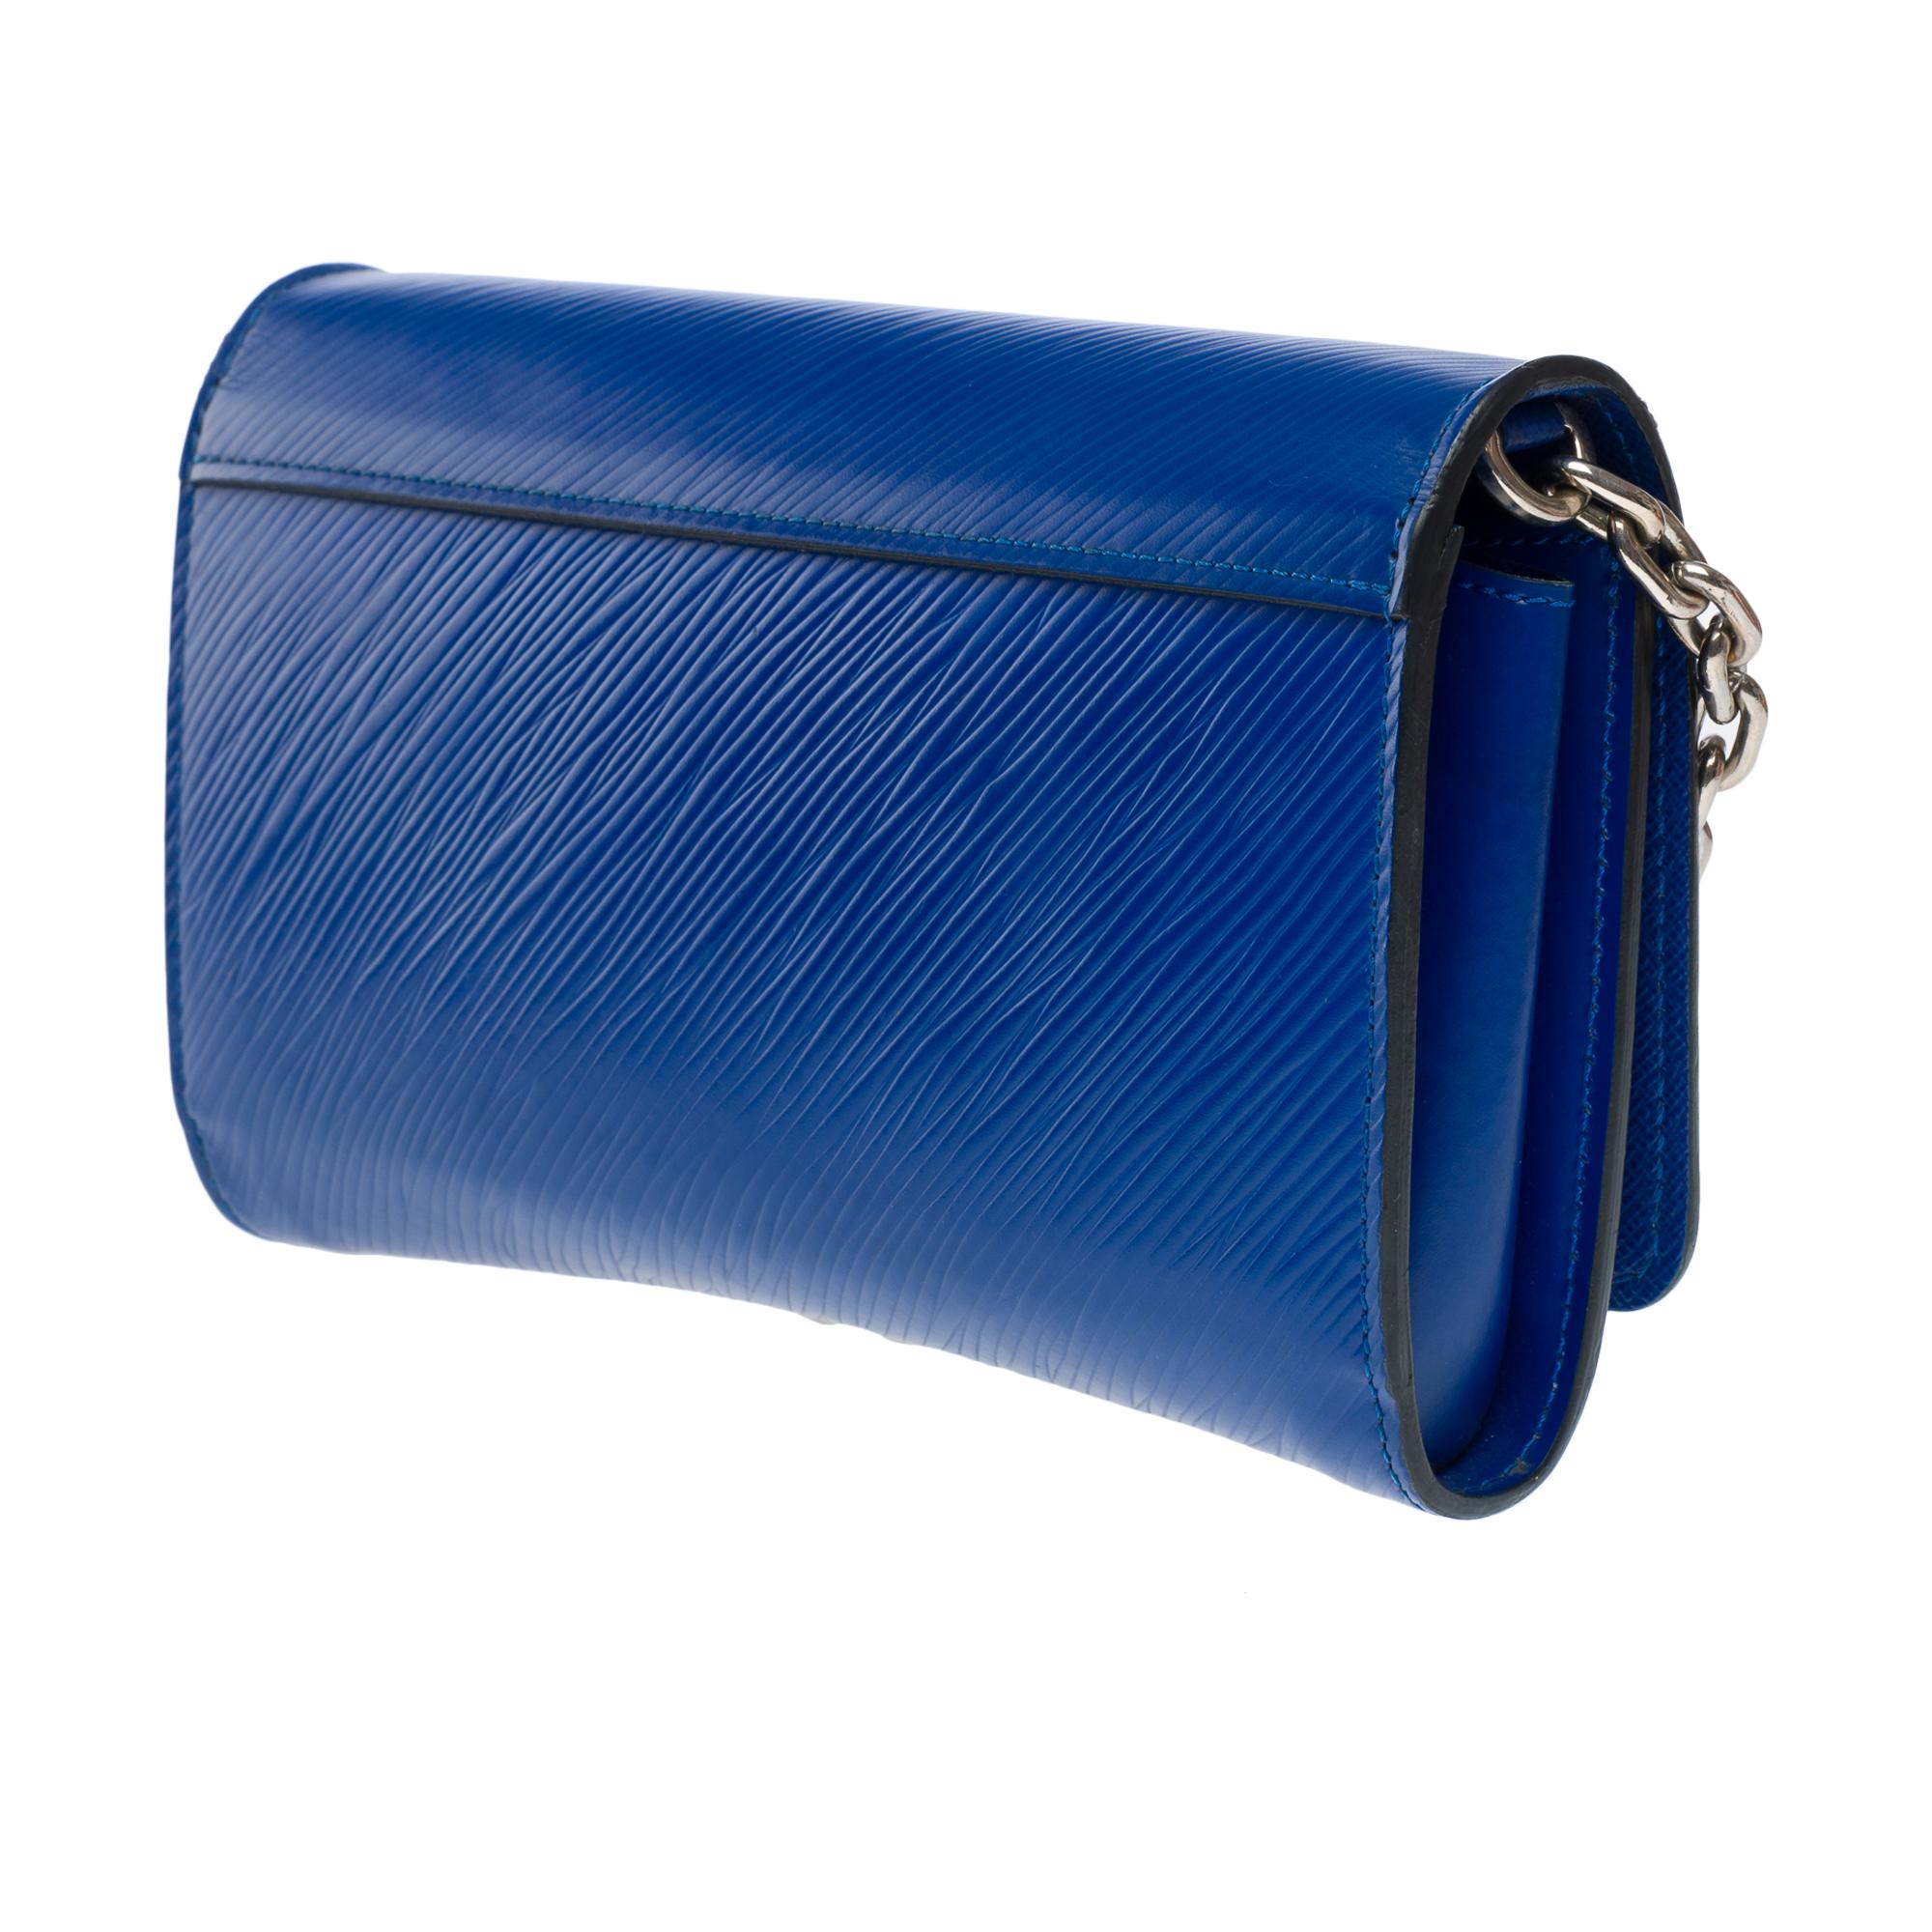 Flamingo Louis Vuitton Twist shoulder bag in blue epi leather, SHW 2